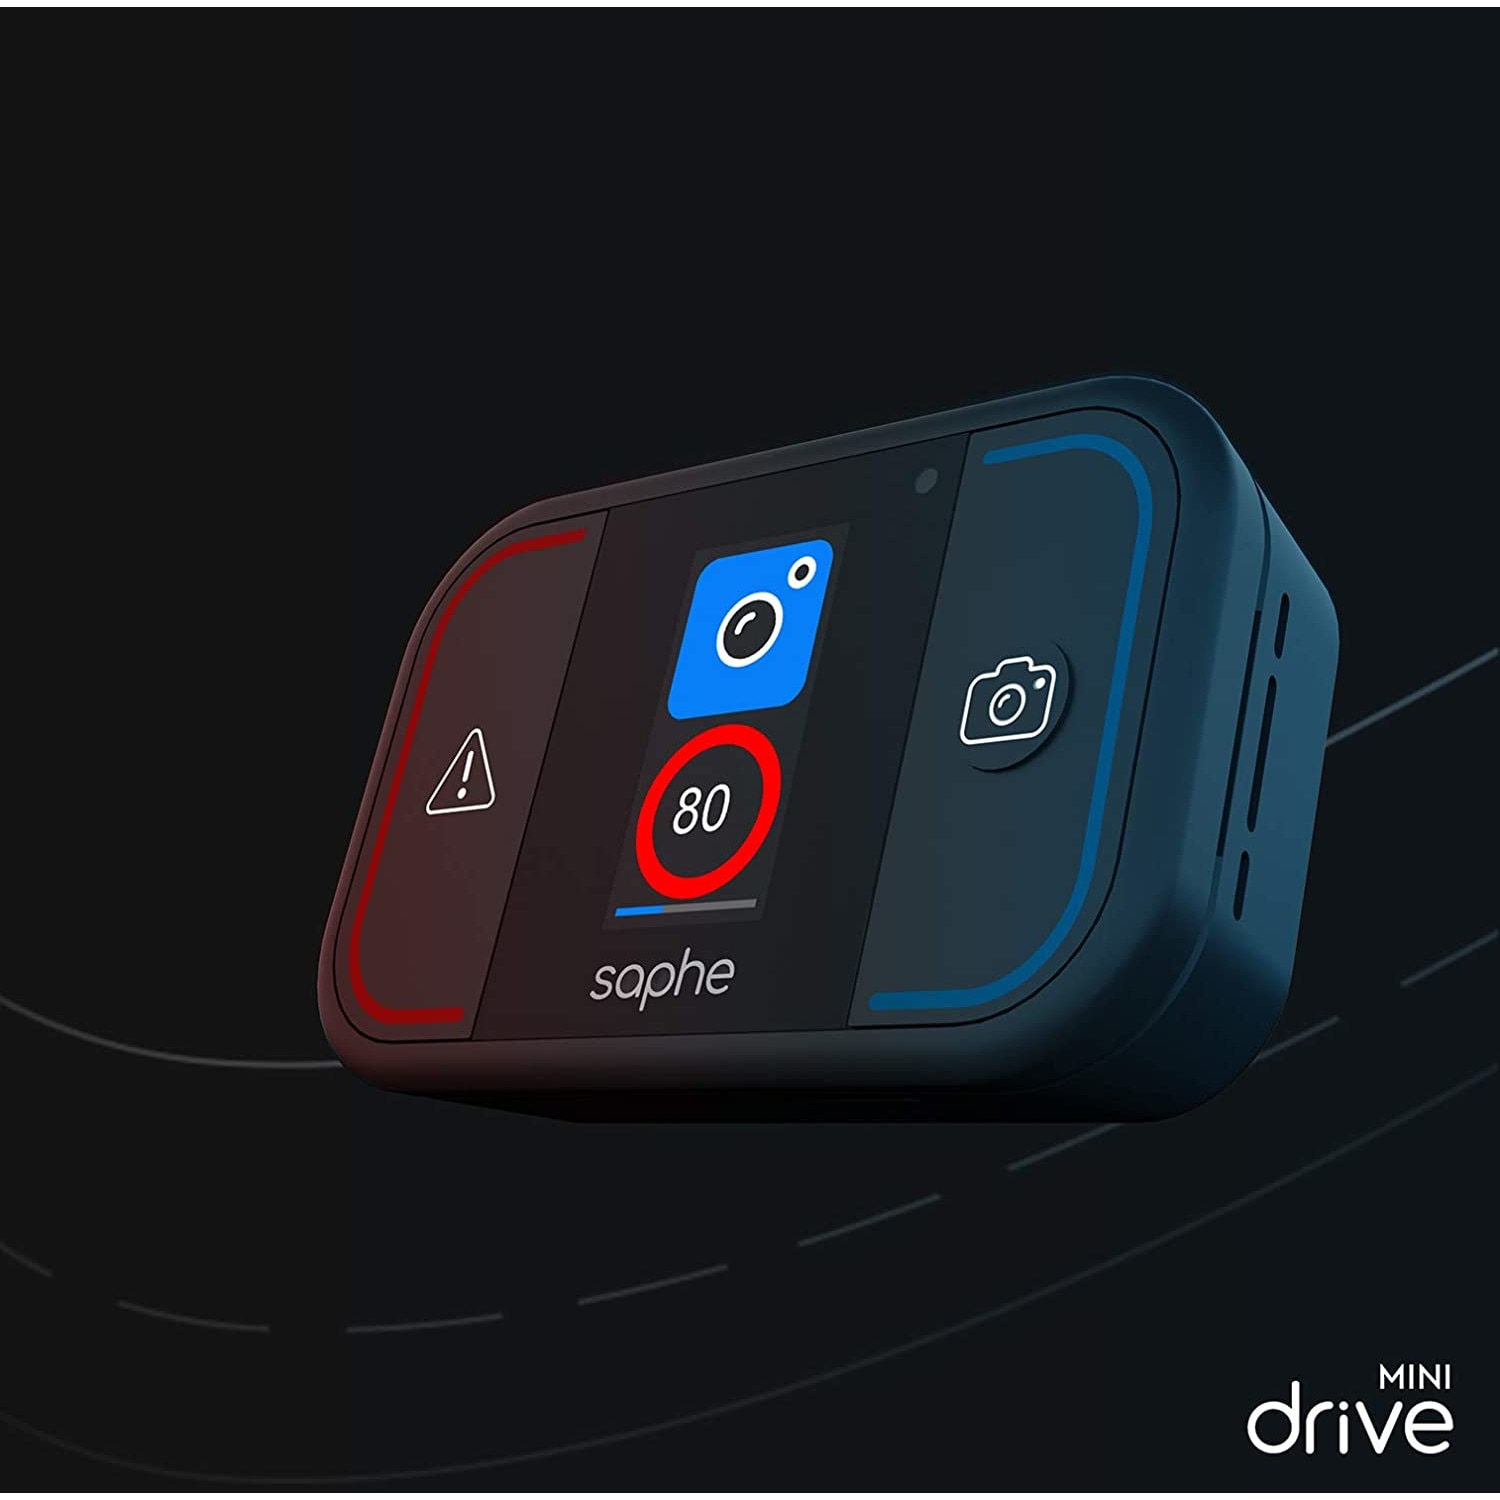 Saphe Drive Pro Blitzerwarner und Verkehrsalarm im Test - Vergleich Drive  Mini - Rechtliches 